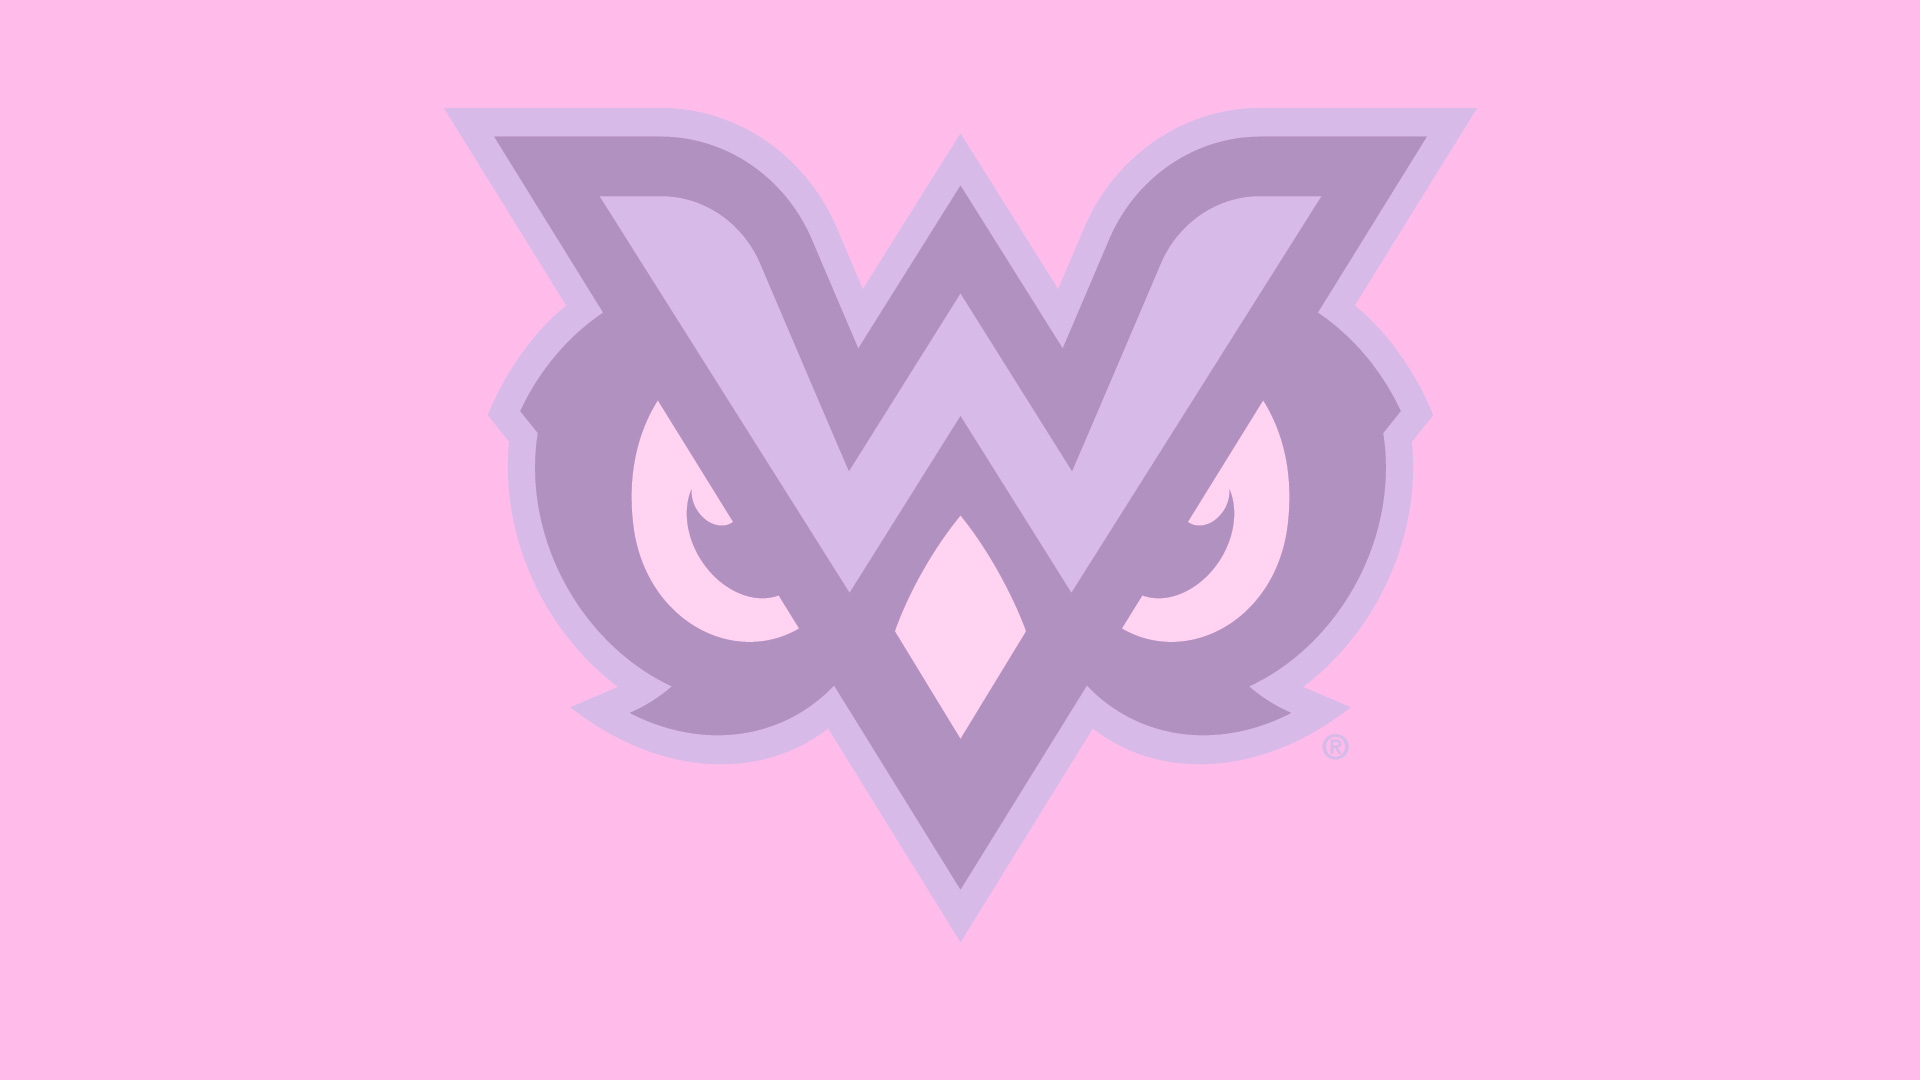 Owls logo on pink field